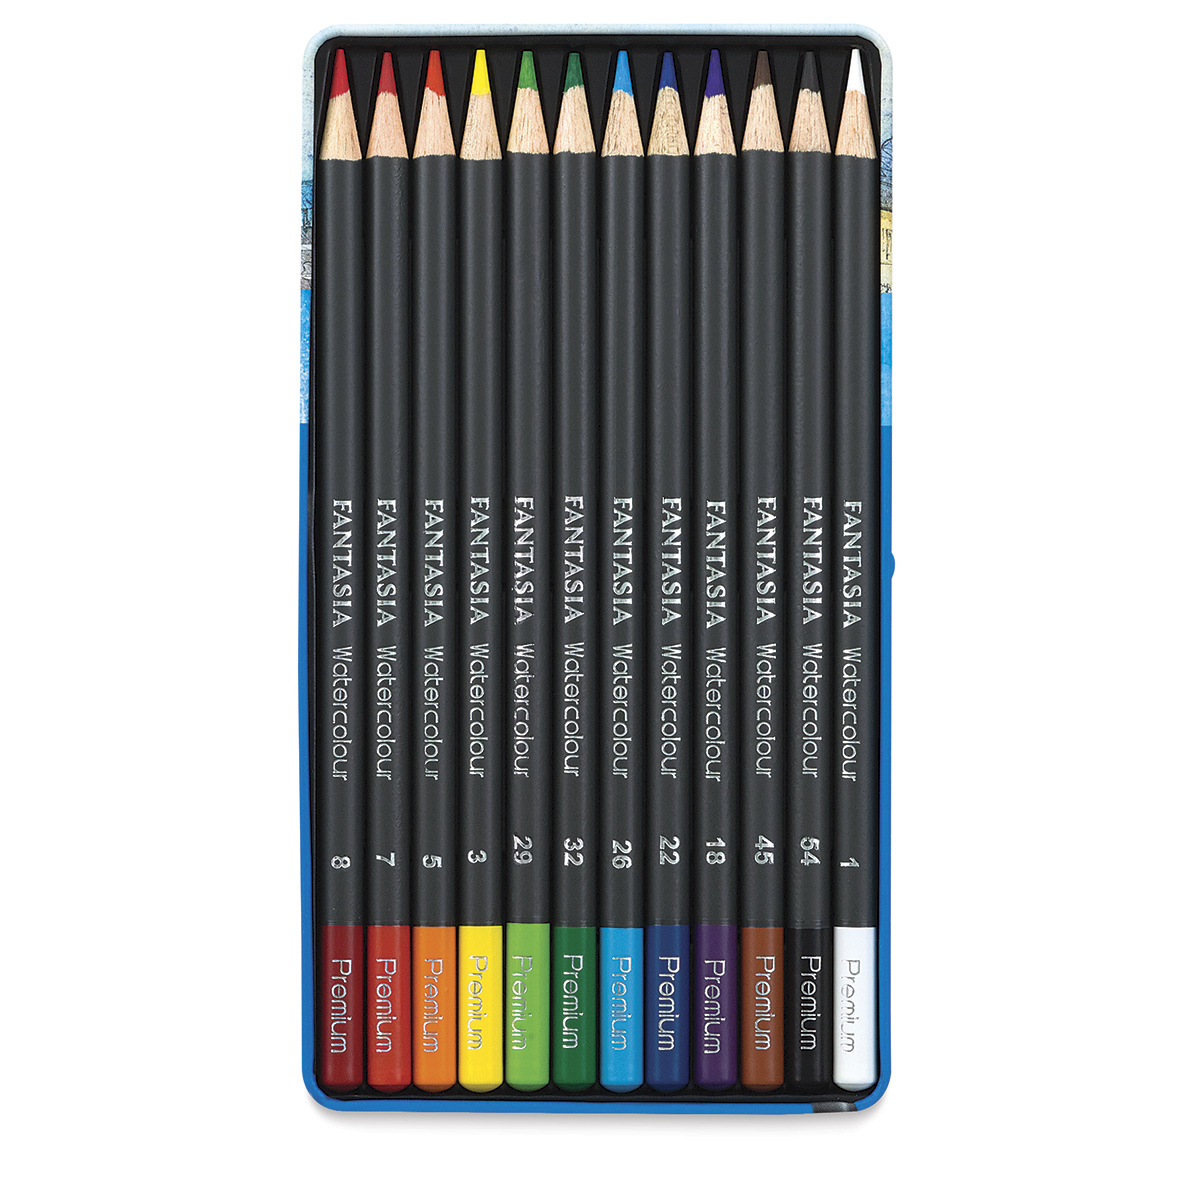 Fantasia Colored Pencil Sets